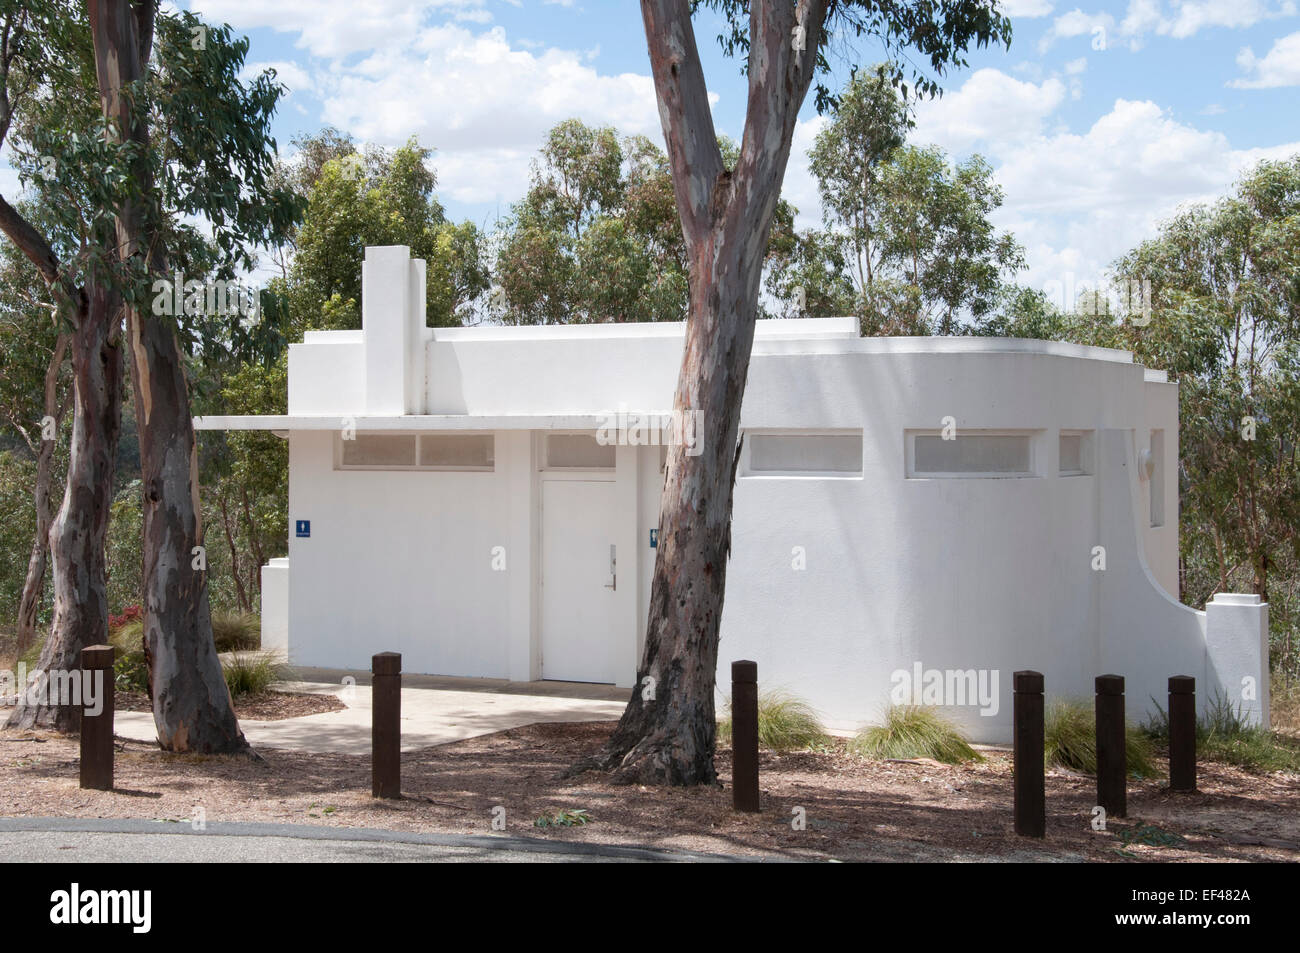 Les commodités de 'treamline moderne' sont situées au monument commémoratif de guerre d'Albury, Nouvelle-Galles du Sud, Australie Banque D'Images